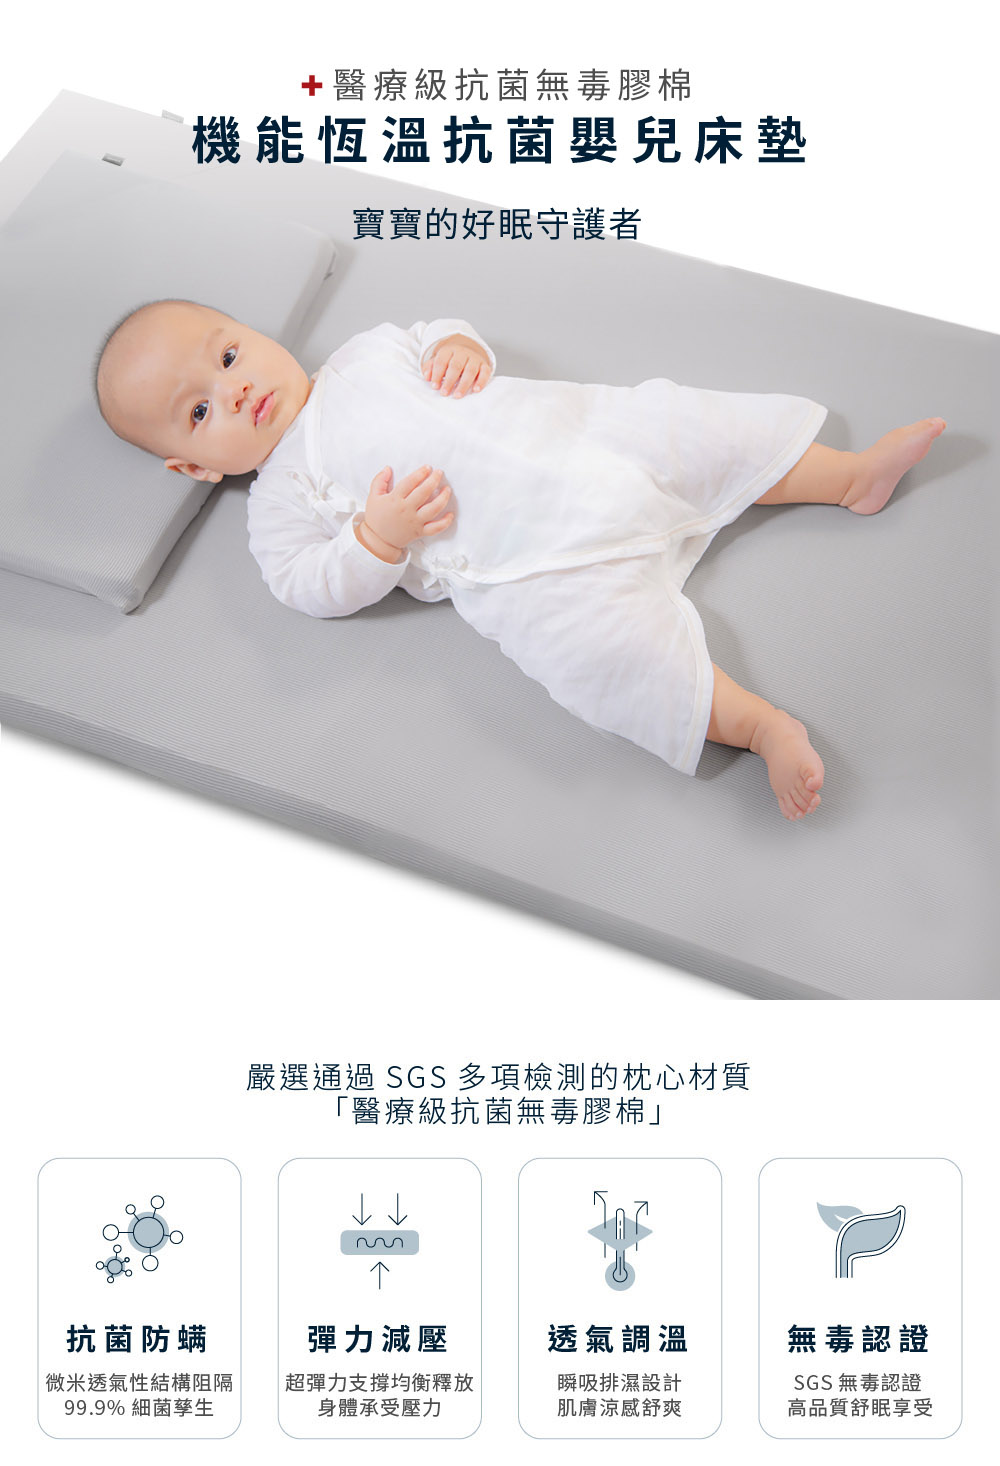 Gennies 奇妮 舒眠超值寢具二件組-咖啡紗(嬰兒床墊+